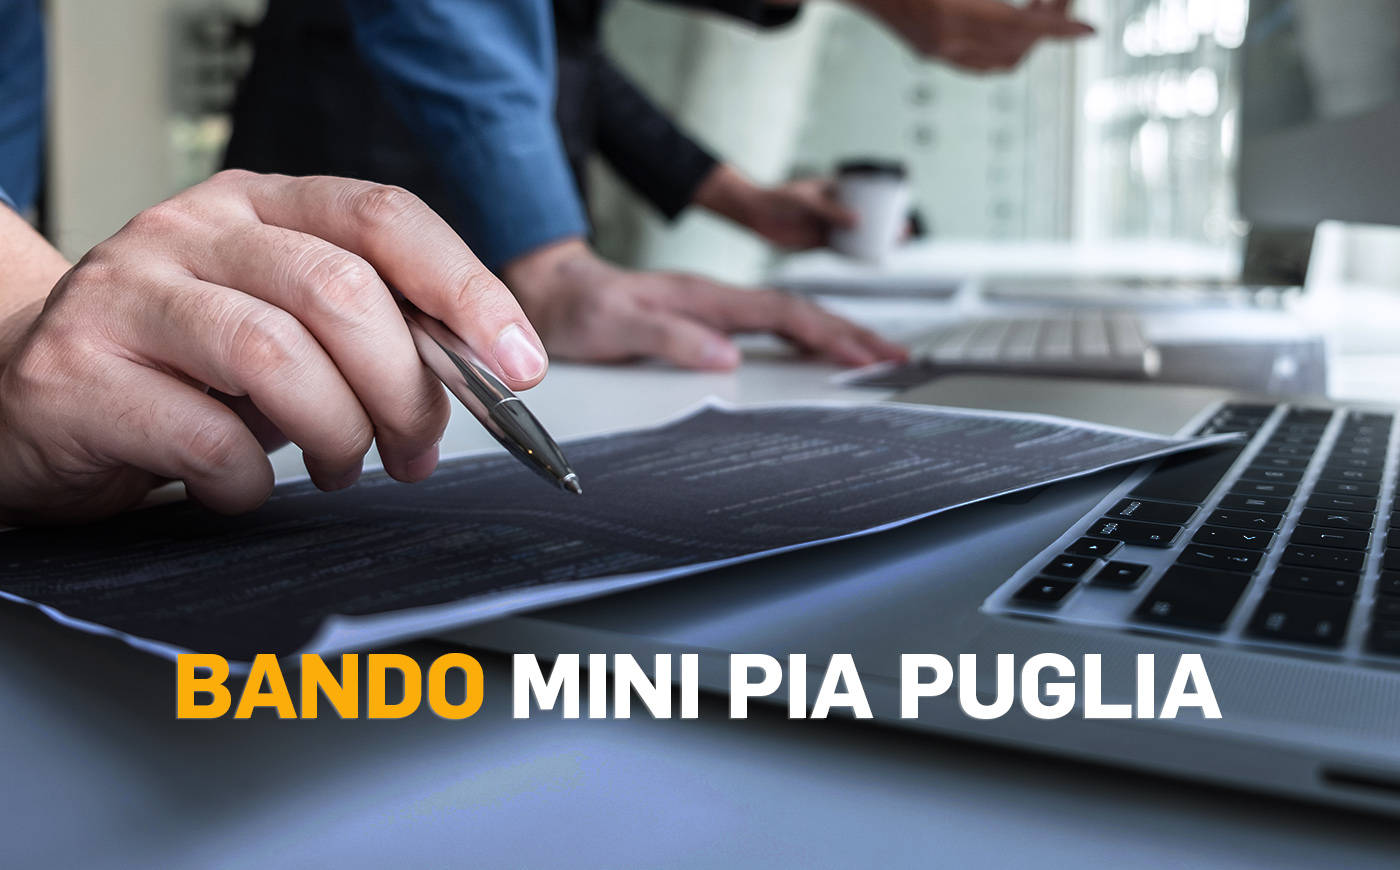 Bando MiniPIA Puglia: sostegno per micro e piccole imprese per l'innovazione digitale e competitività